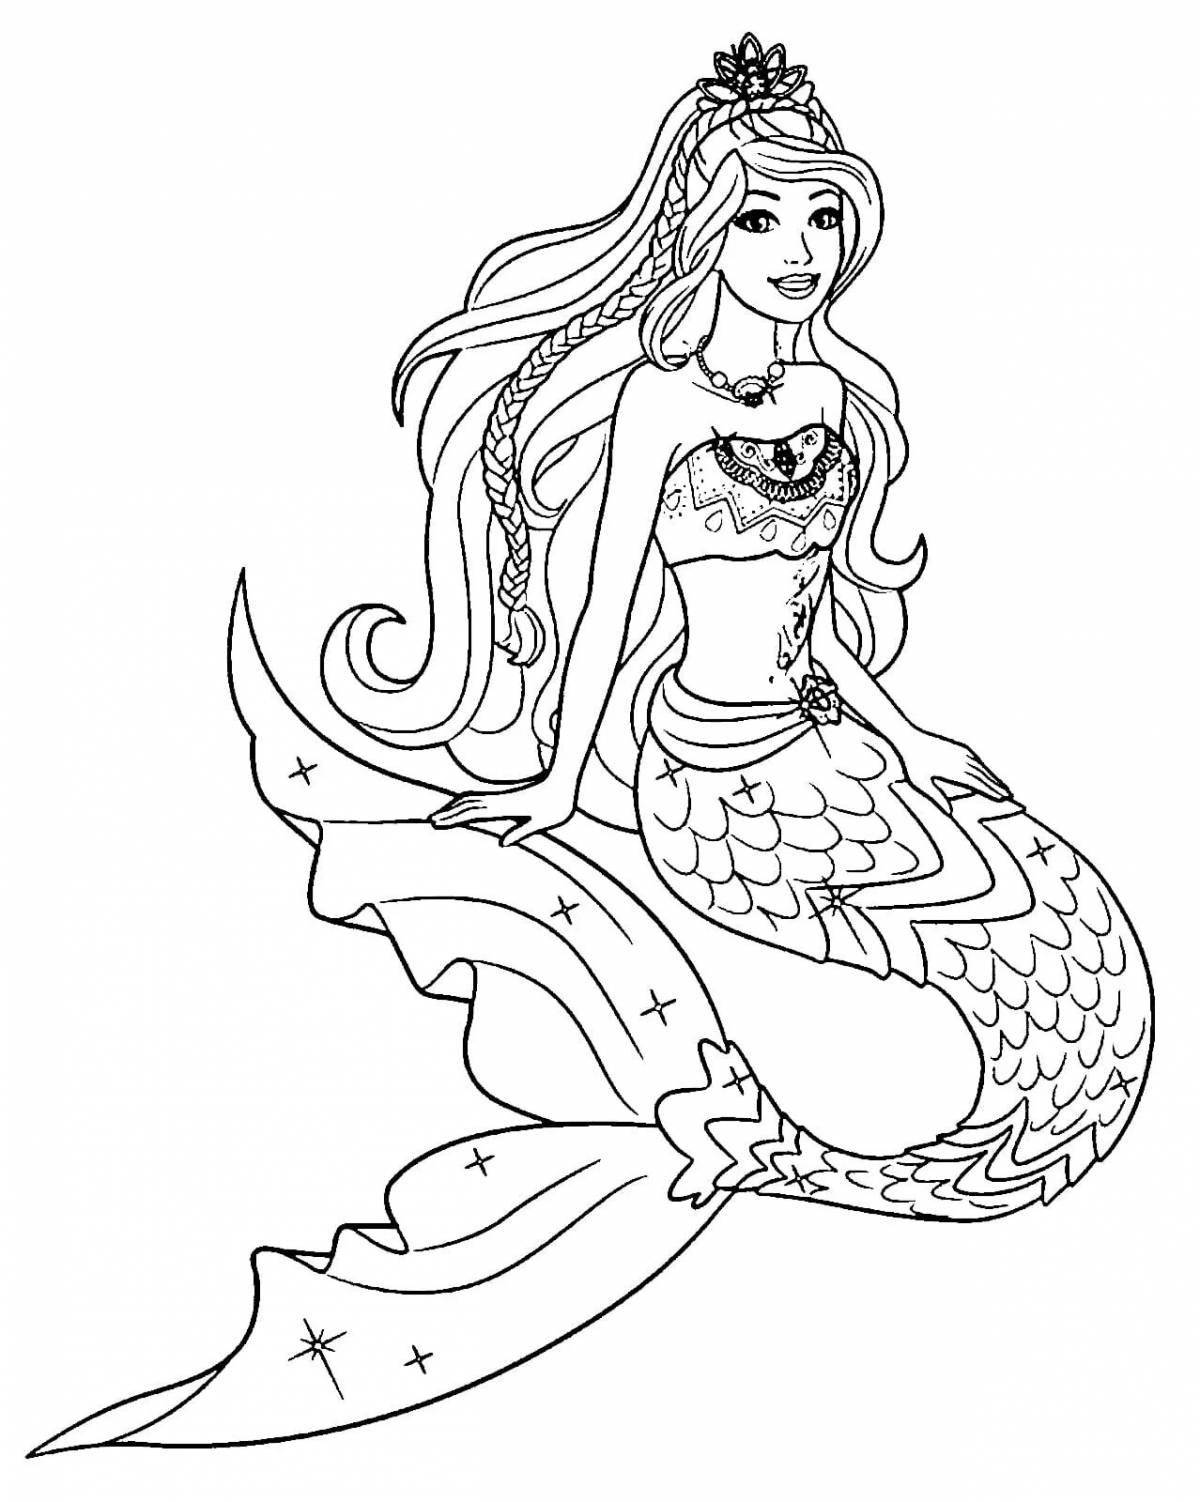 Exquisite barbie mermaid coloring book